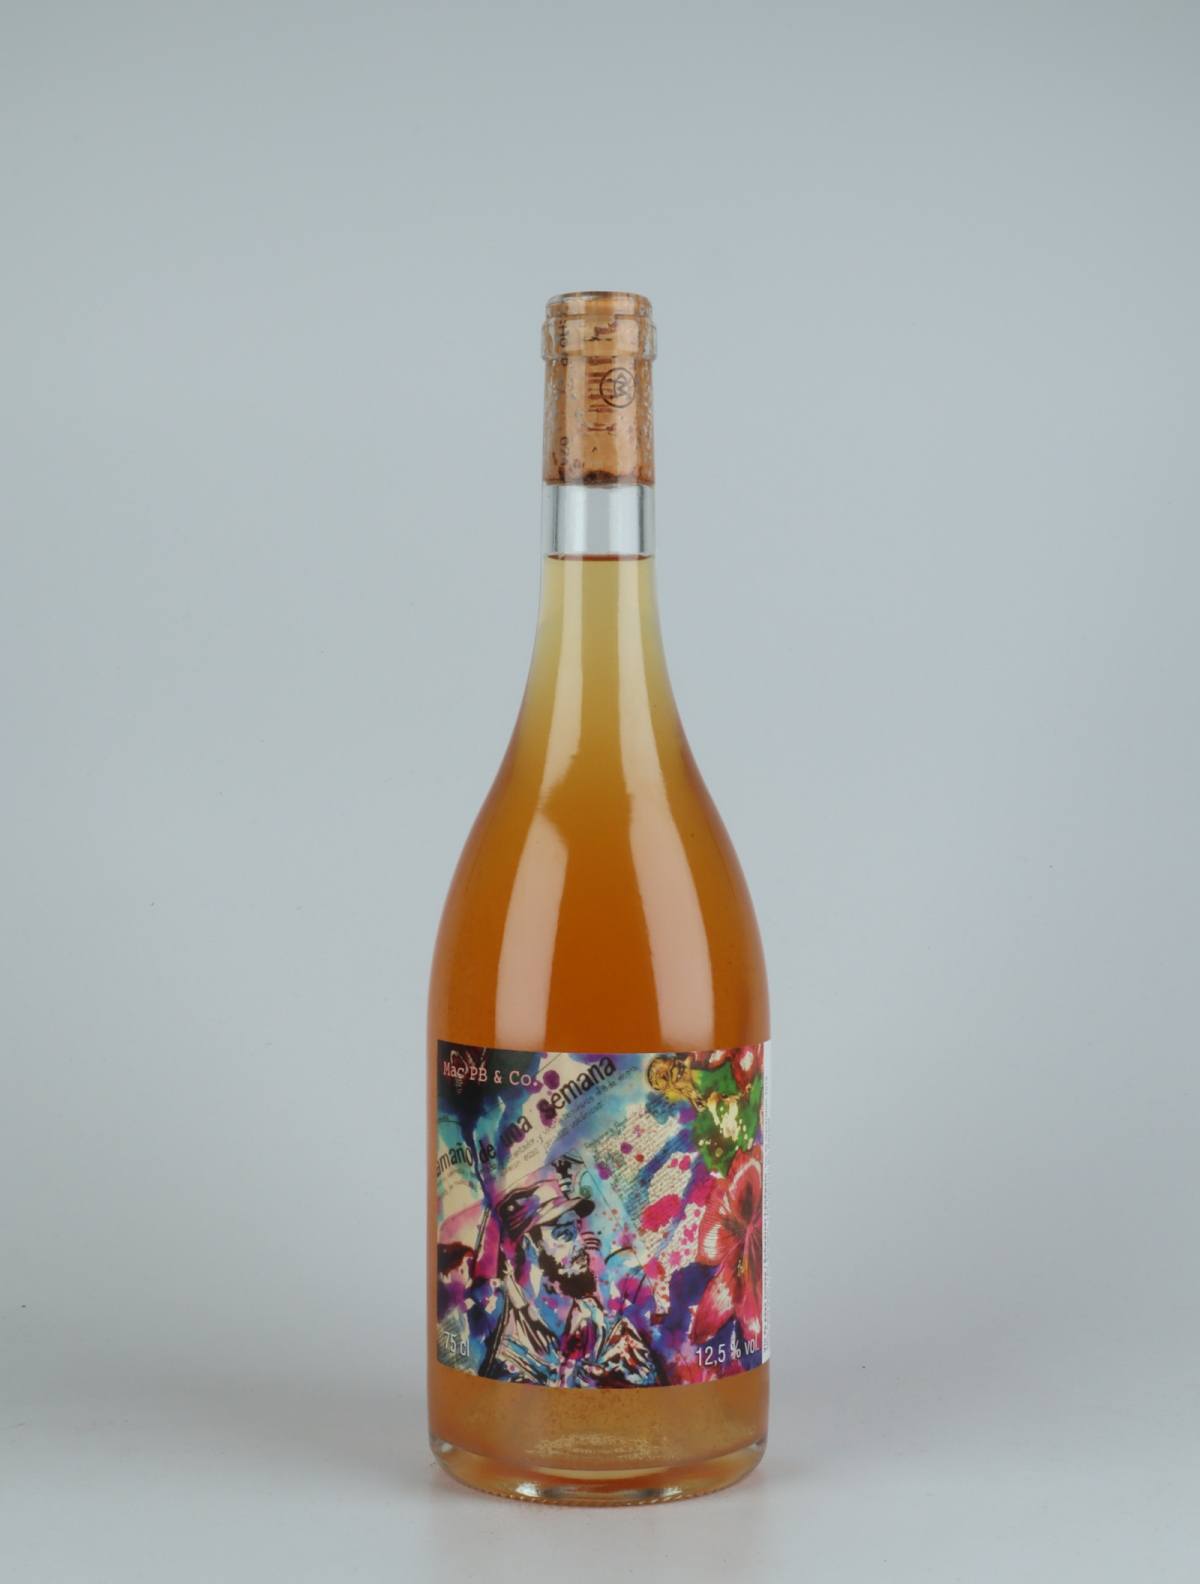 En flaske 2019 Mac PB & Co. Orange vin fra Les Vins du Fab, Neuchâtel i Schweiz